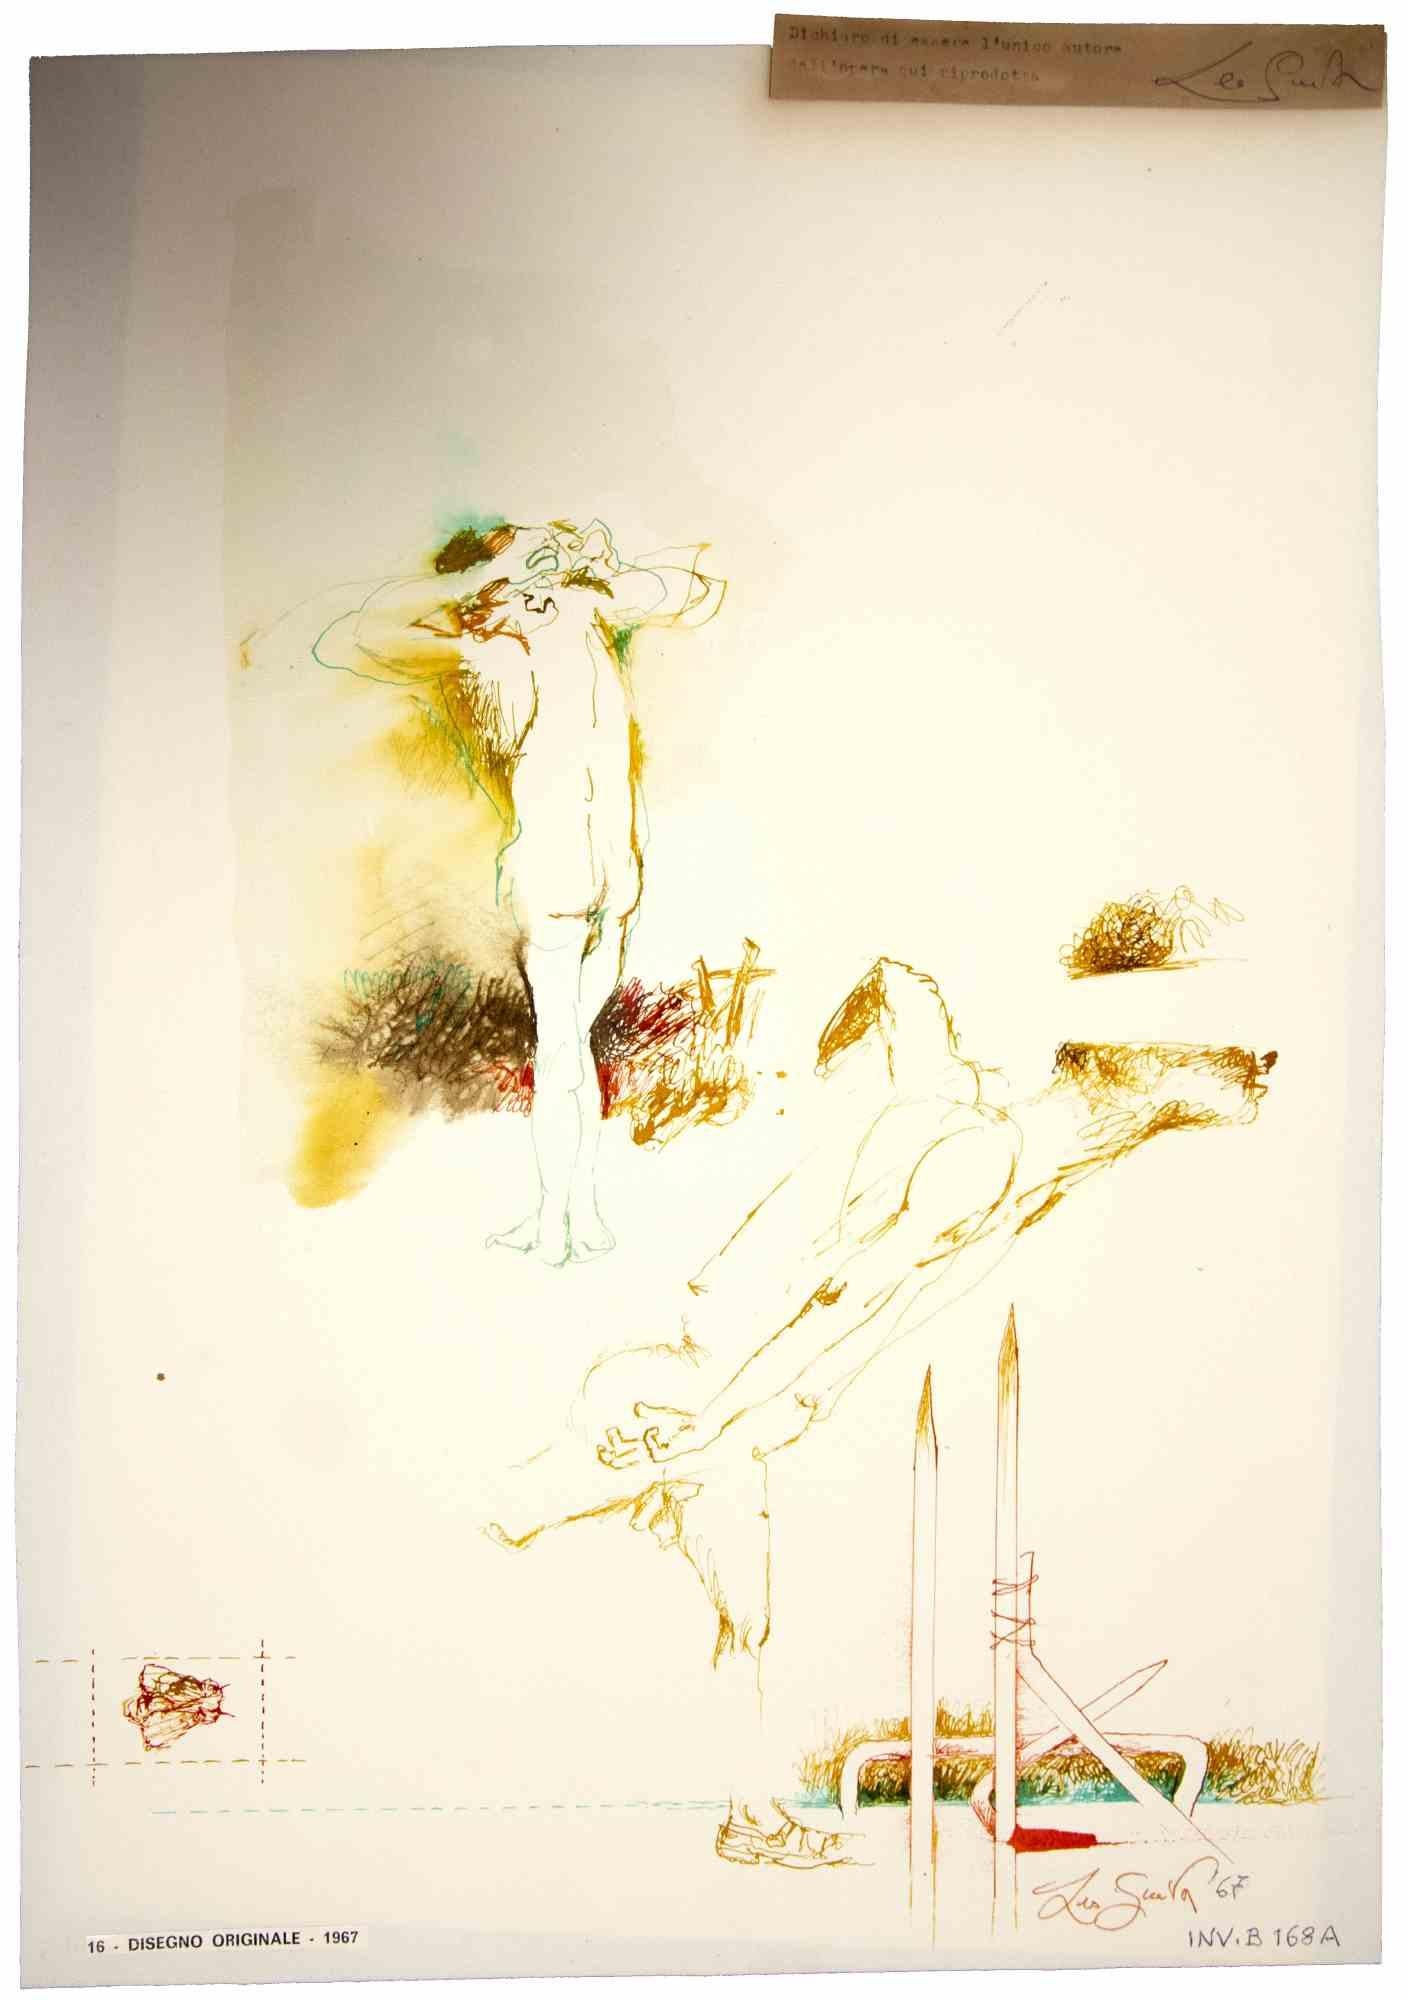 Nude ist ein originales Kunstwerk, realisiert  im Jahr 1967 von dem italienischen zeitgenössischen Künstler  Leo Guida  (1992 - 2017).

Originalzeichnung mit Tusche und Aquarellfarben auf elfenbeinfarbenem Papier, auf Karton geklebt (50 x 35